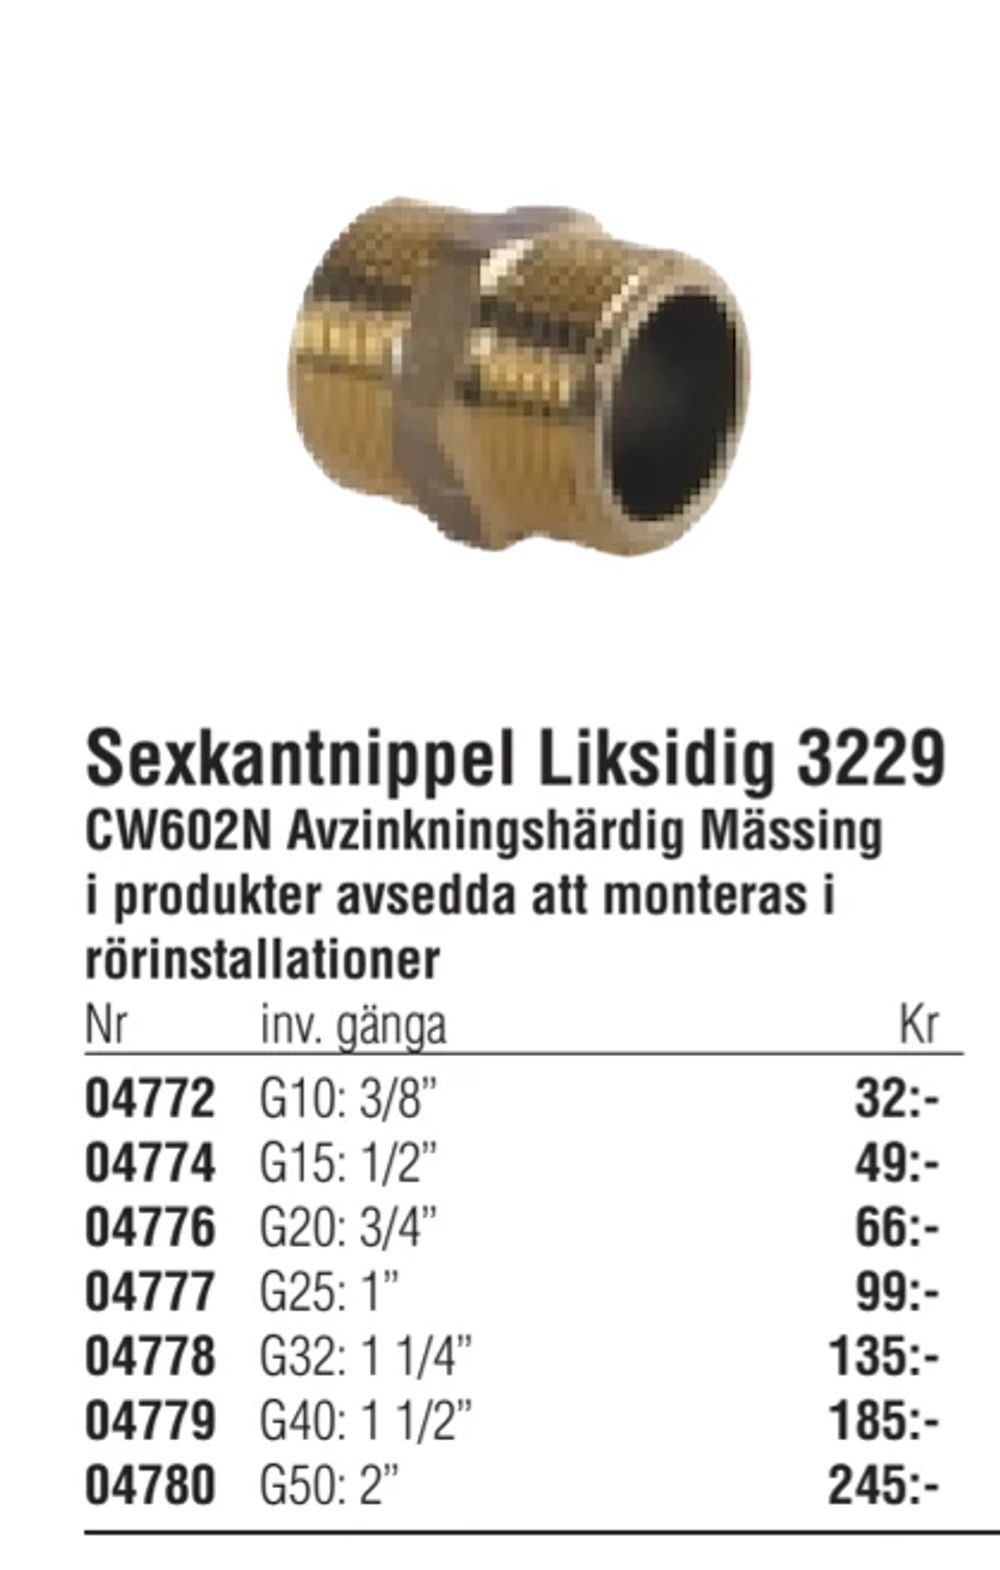 Erbjudanden på Sexkantnippel Liksidig 3229 från Erlandsons Brygga för 32 kr